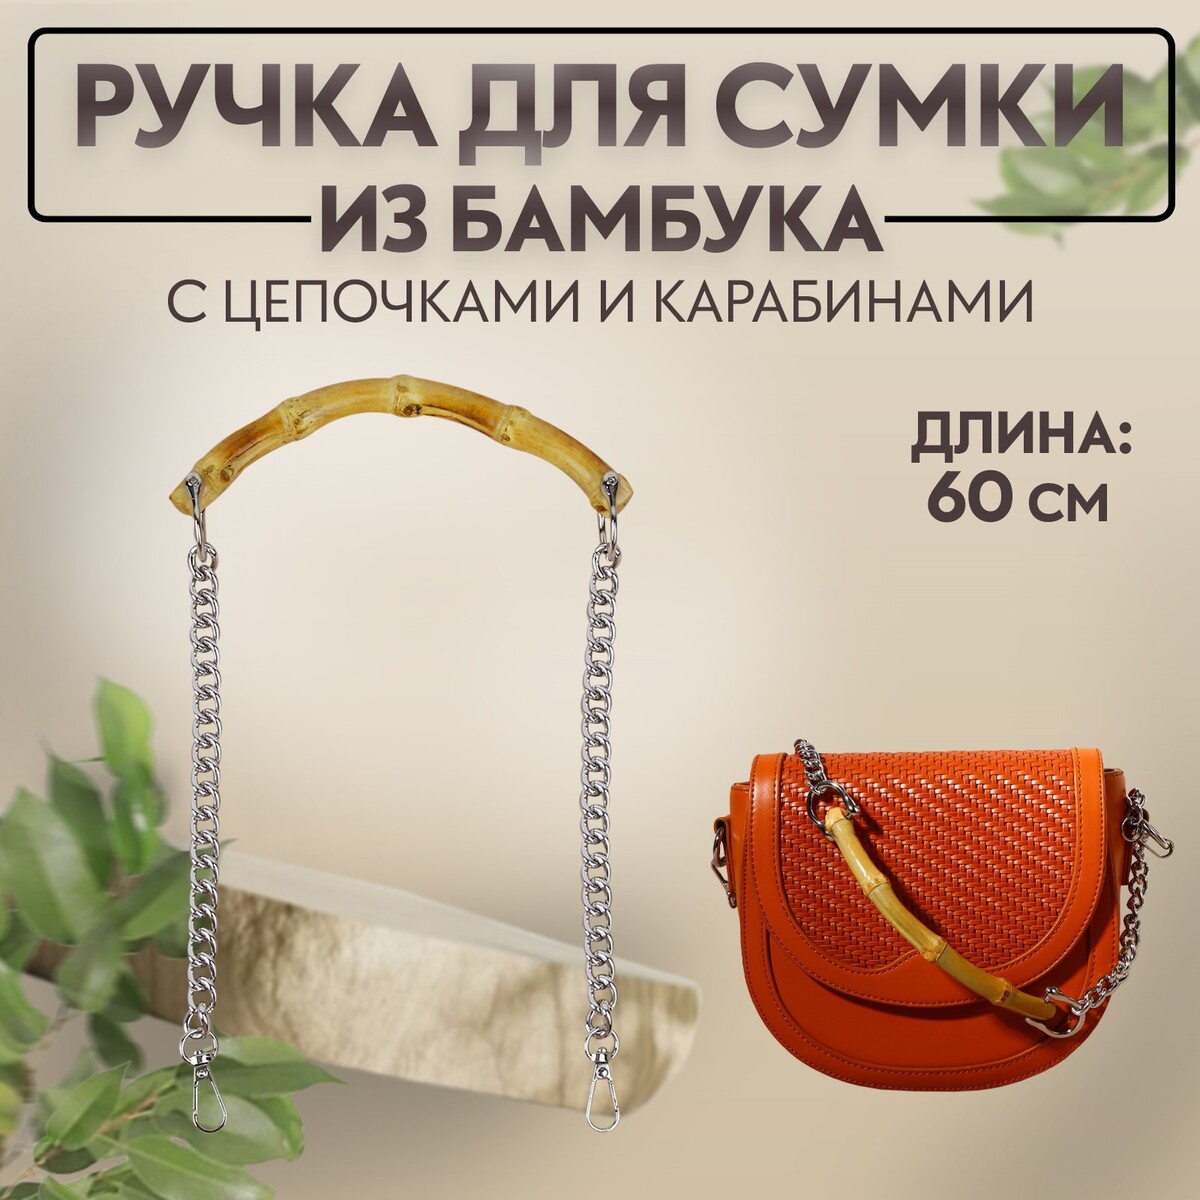 Ручка для сумки, бамбук, с цепочками и карабинами, 60 см, цвет серебряный ручка для сумки канат 60 × 1 5 см с карабинами кремовый серебряный